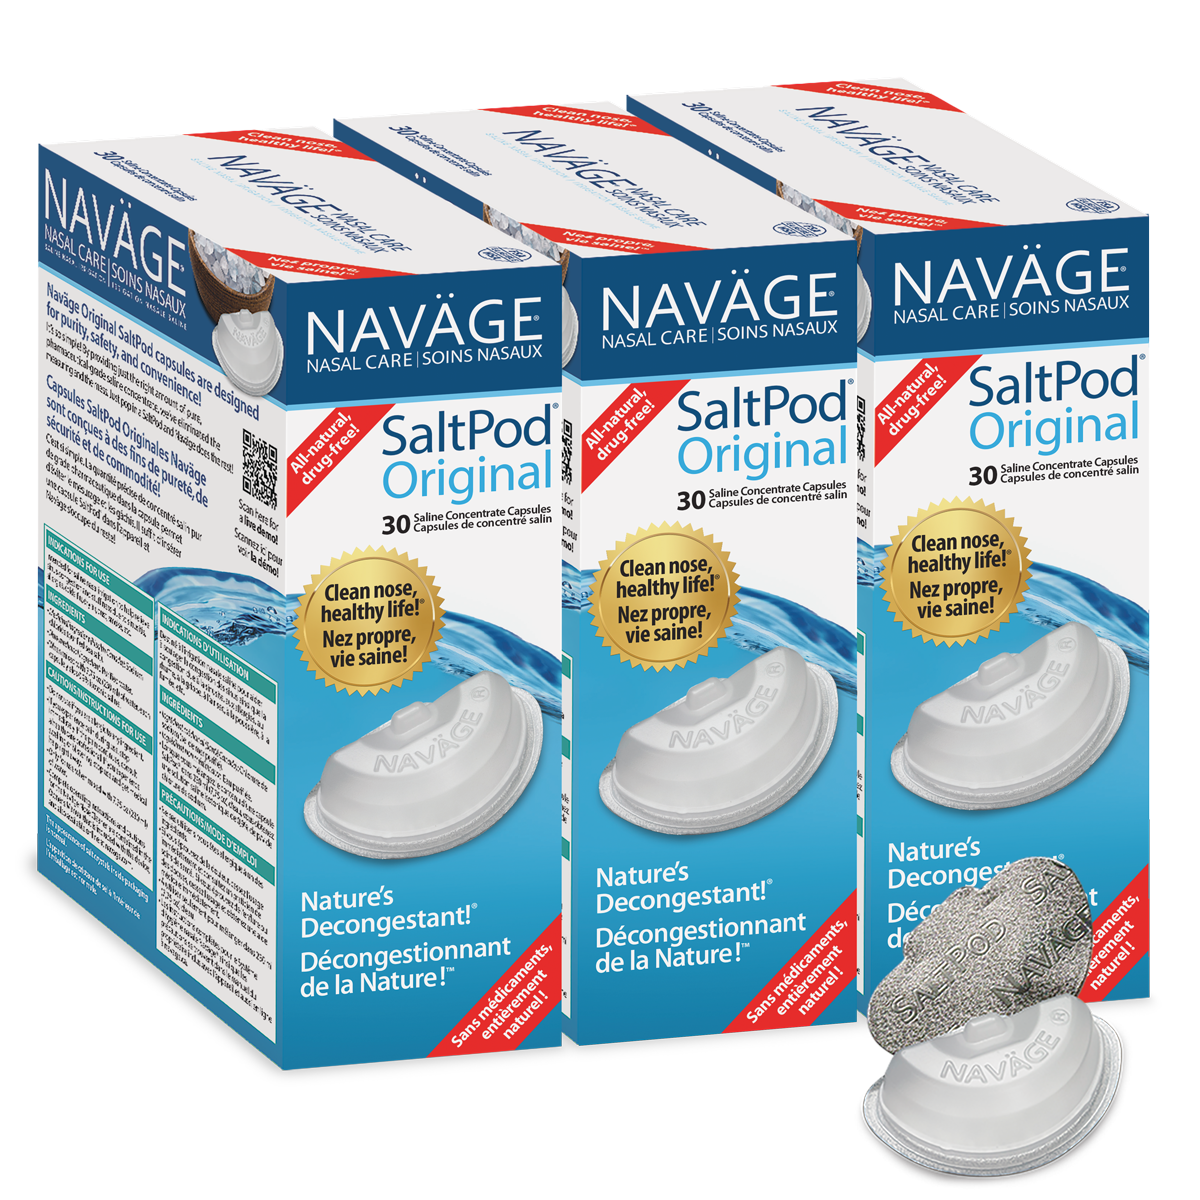 Navage Original Saltpod® Three-pack: 3 Original Saltpod 30-packs (90 Saltpods)